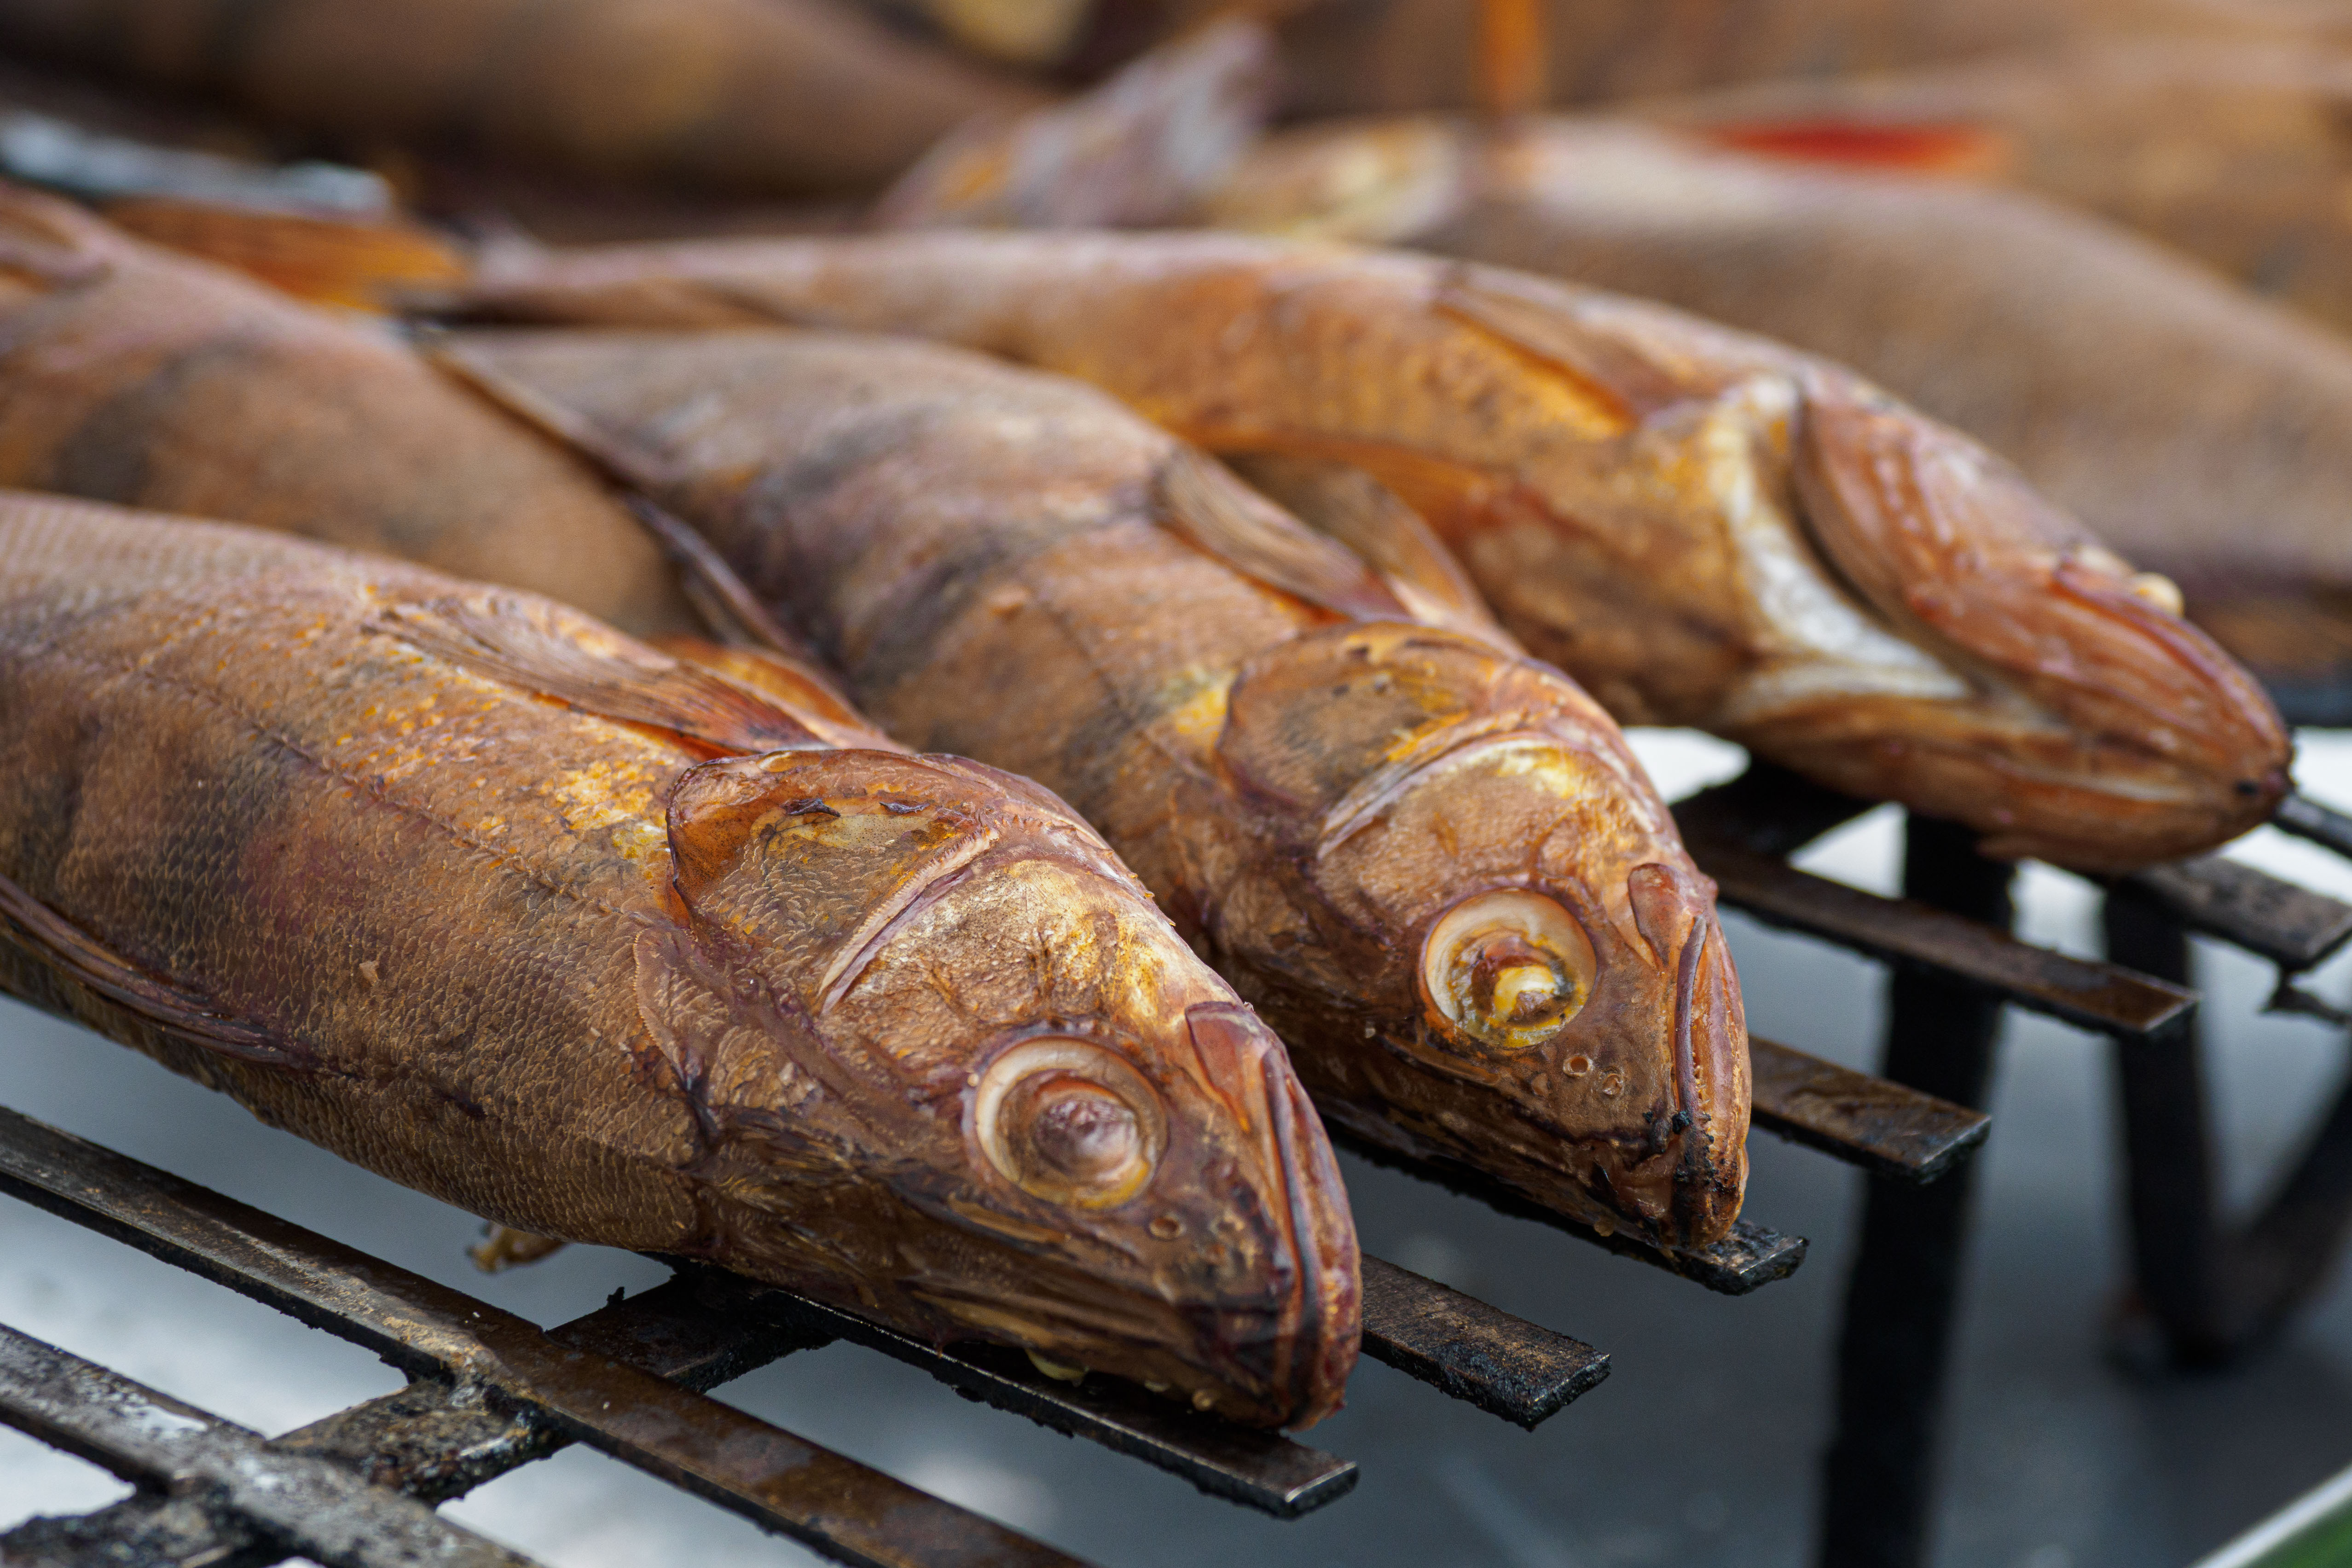 Волга сегодня привлекает любителей хищной рыбы, за которой еще стоит поохотиться.